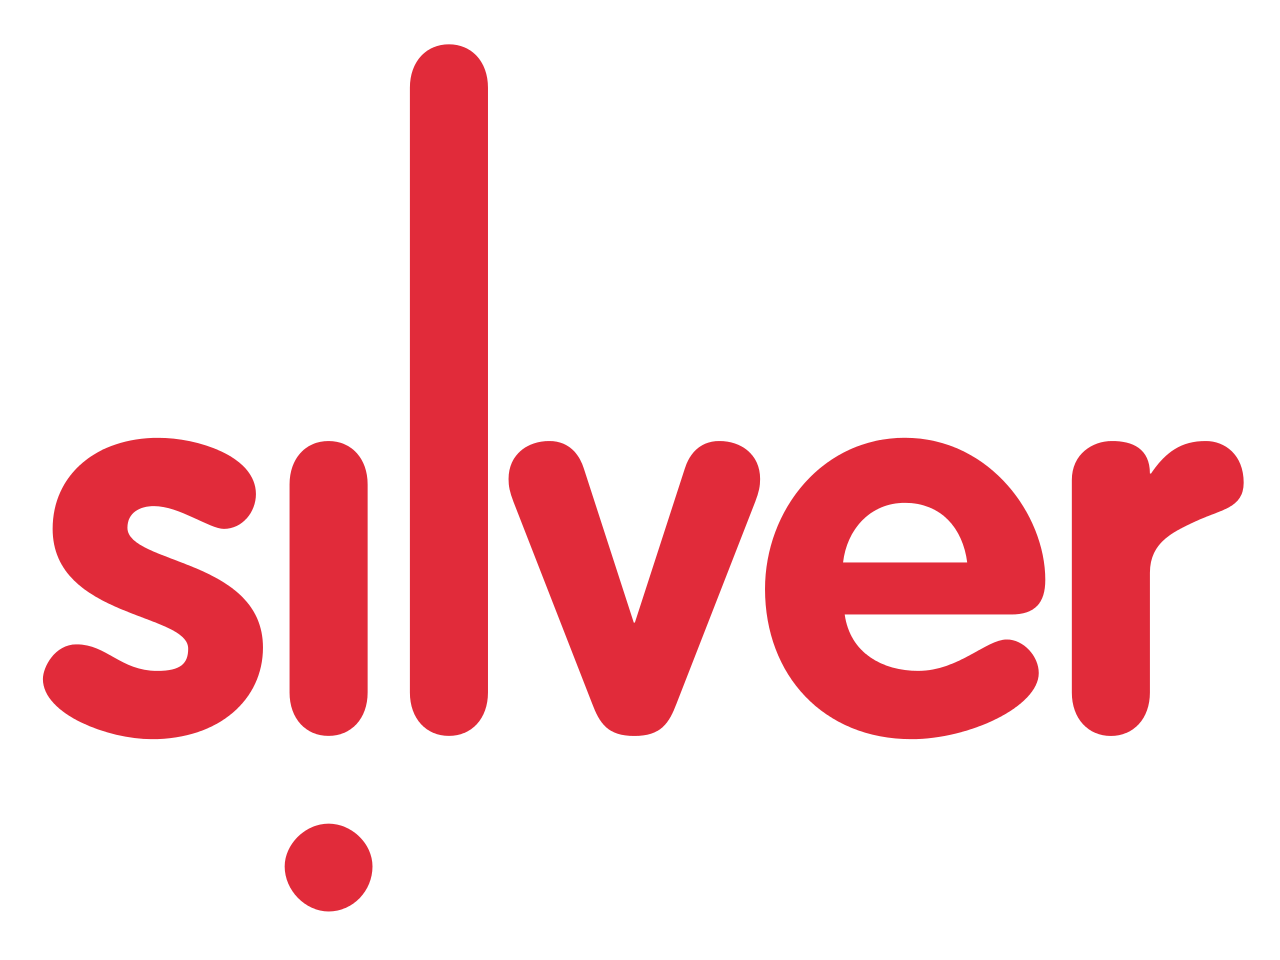 Silver Logos